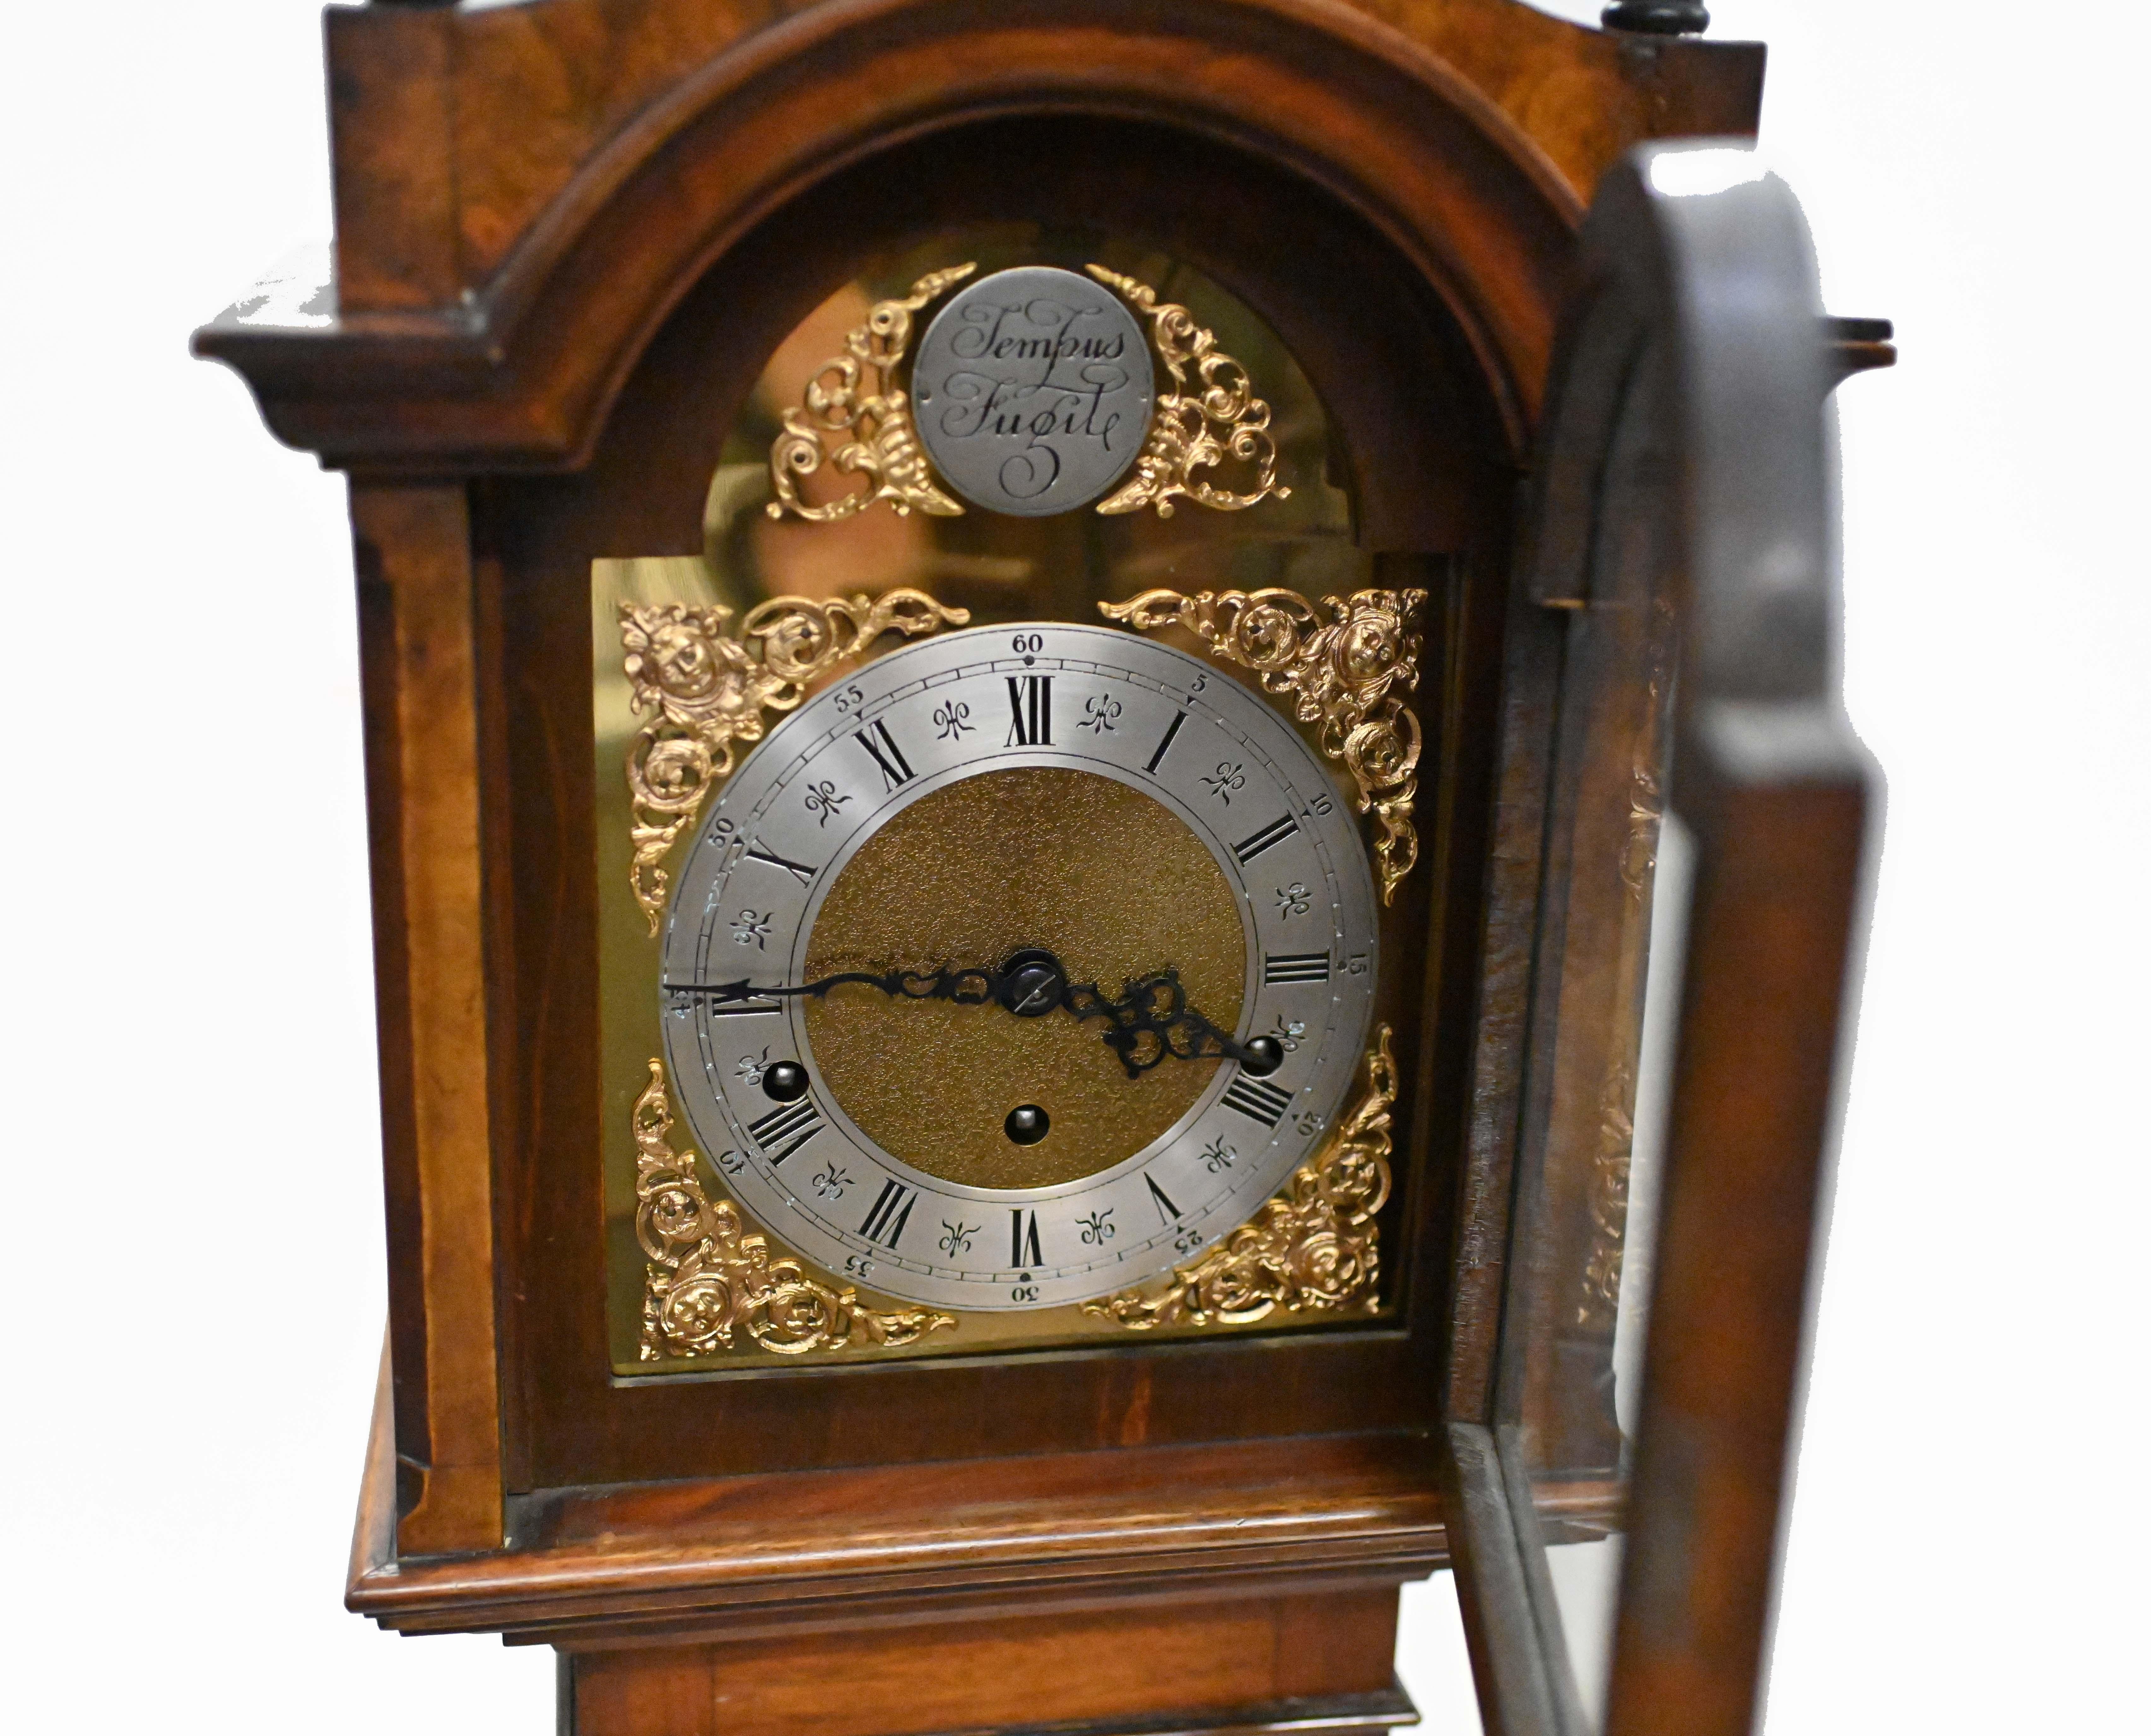 Une magnifique horloge de grand-mère en noyer
Le cadran arqué en laiton porte l'inscription 